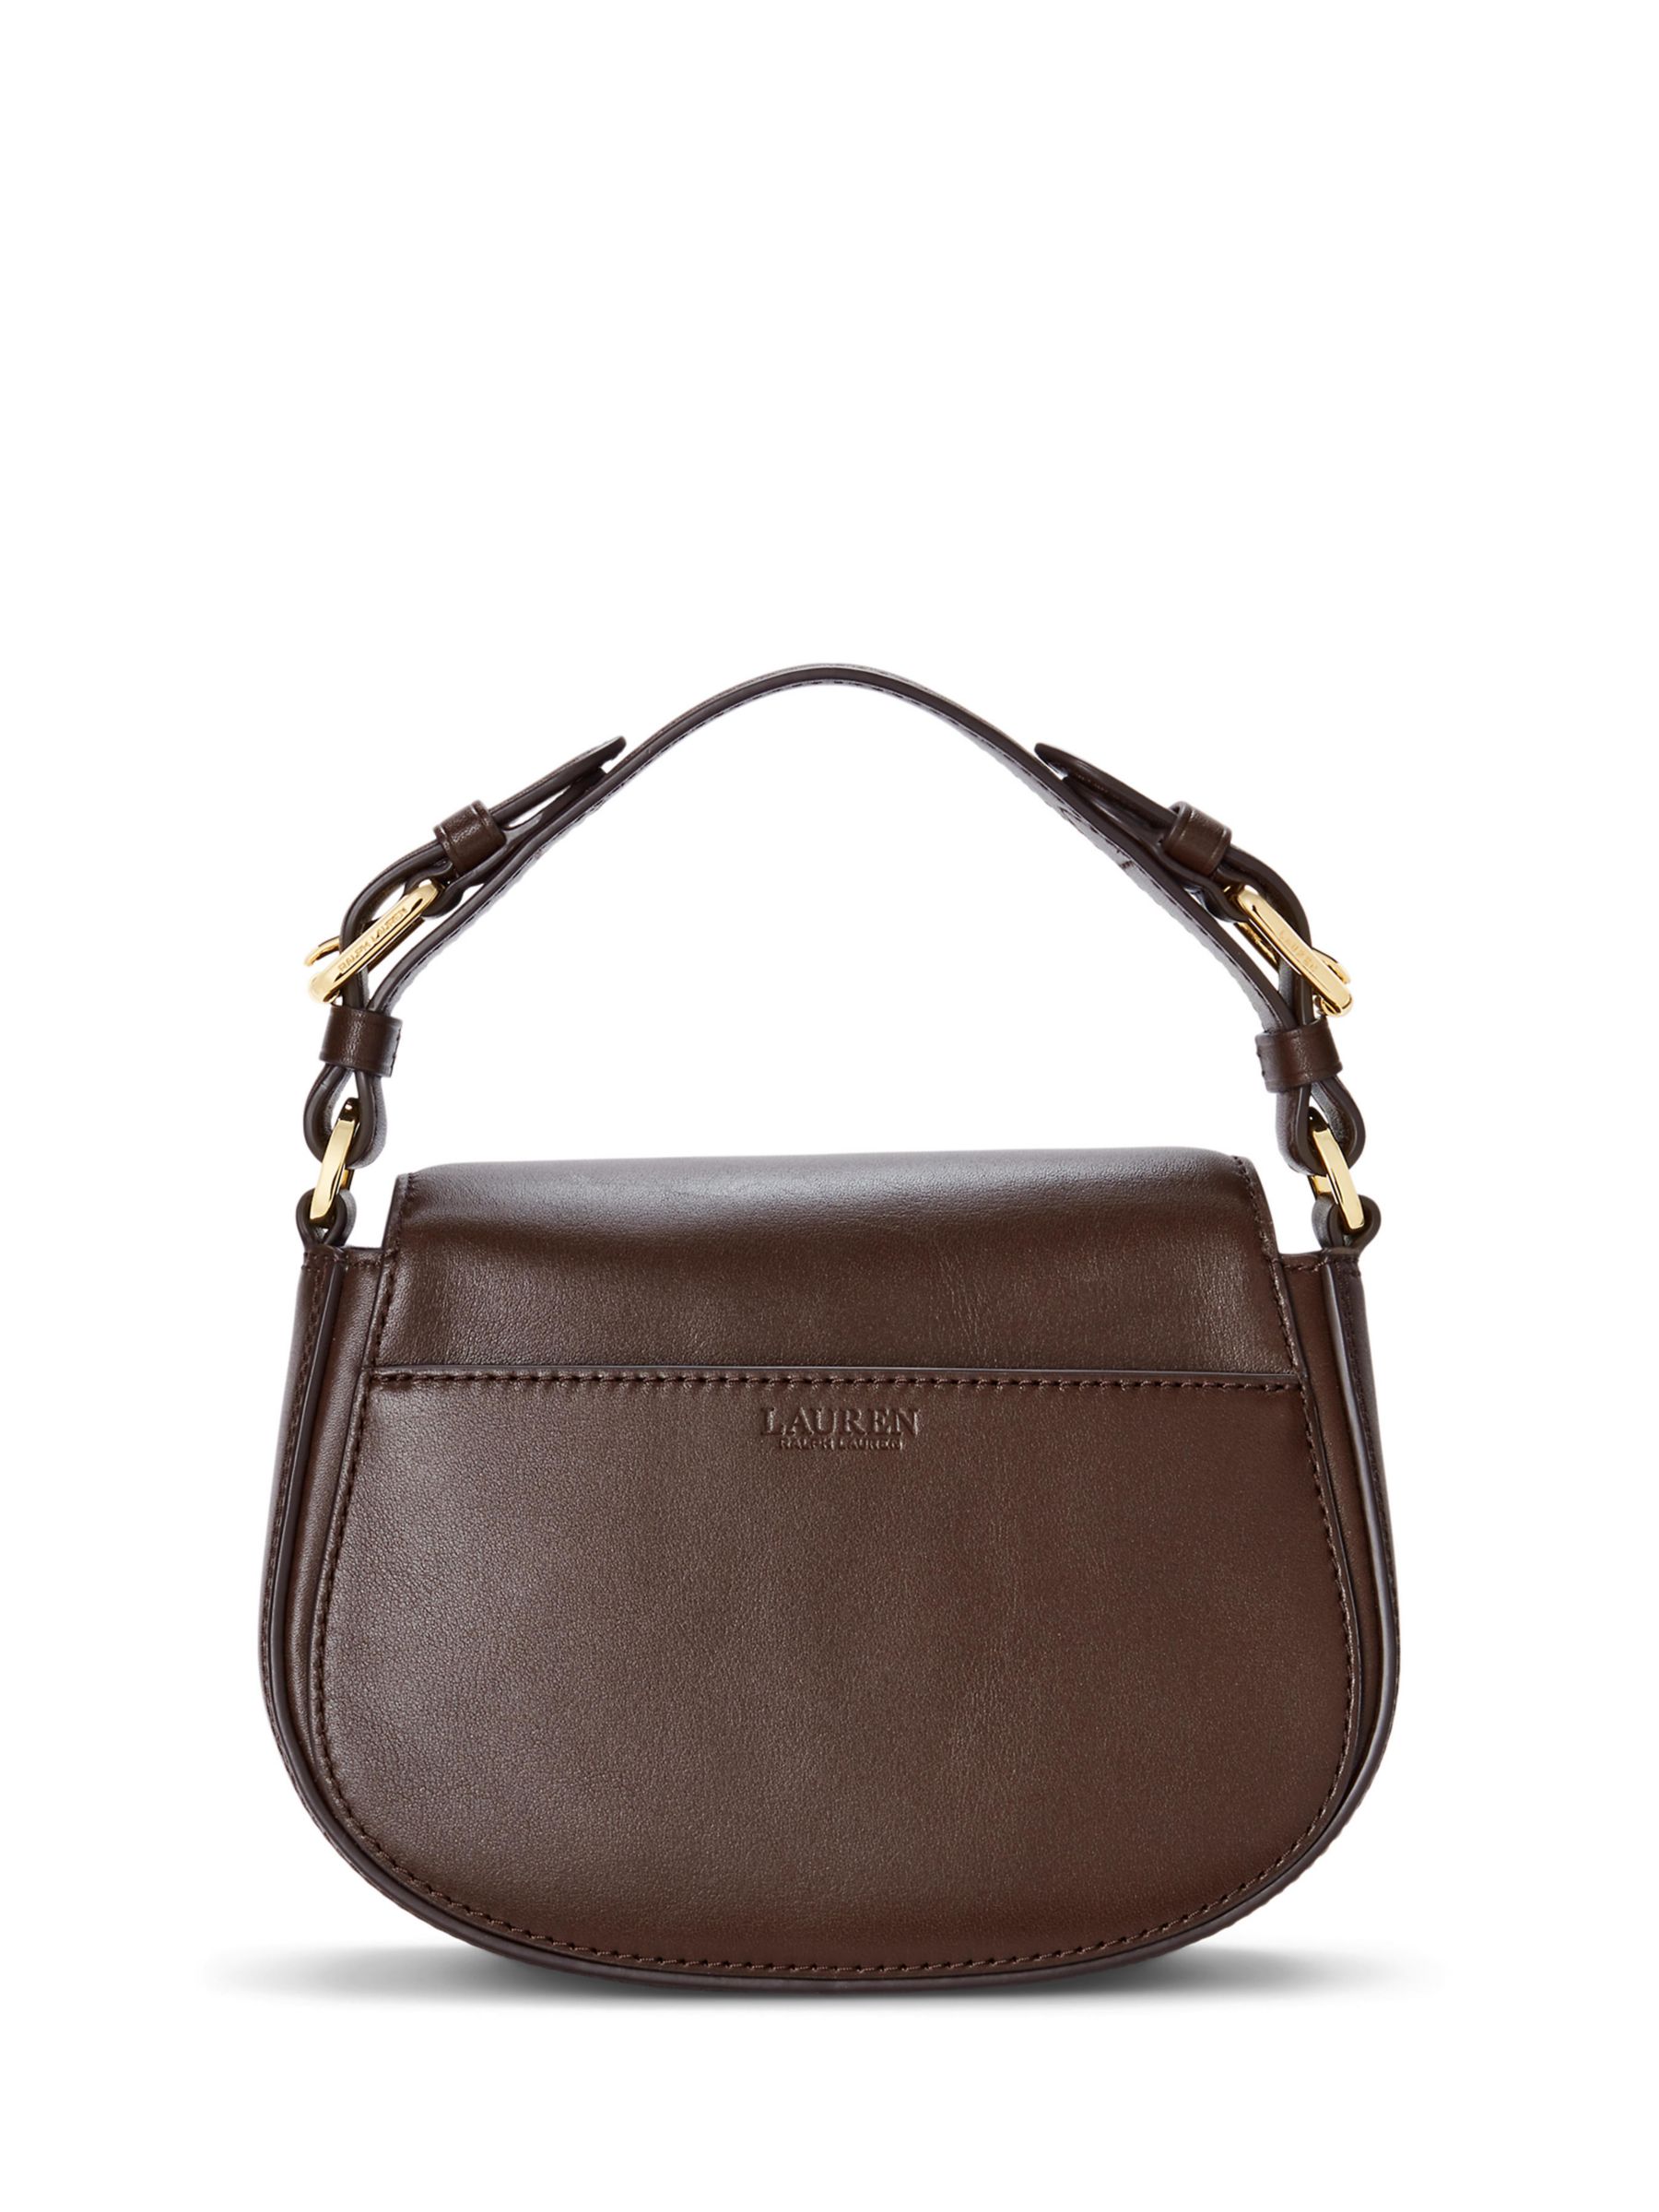 Lauren Ralph Lauren Tanner (Chestnut Brown) Handbags - ShopStyle Shoulder  Bags